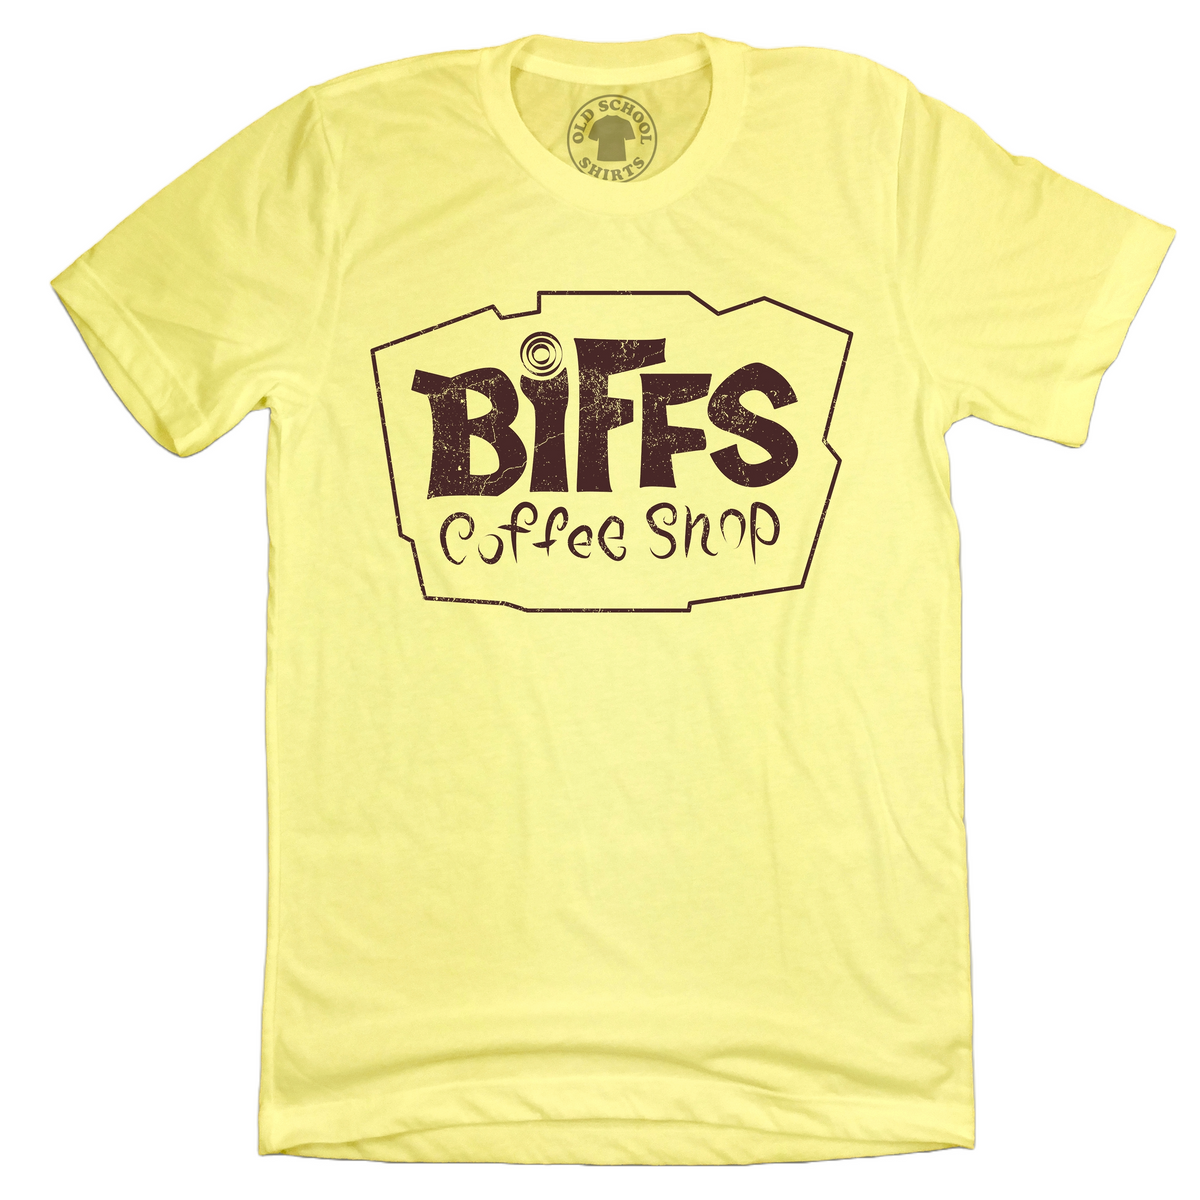 Biffs Coffee Shop Unisex Tee